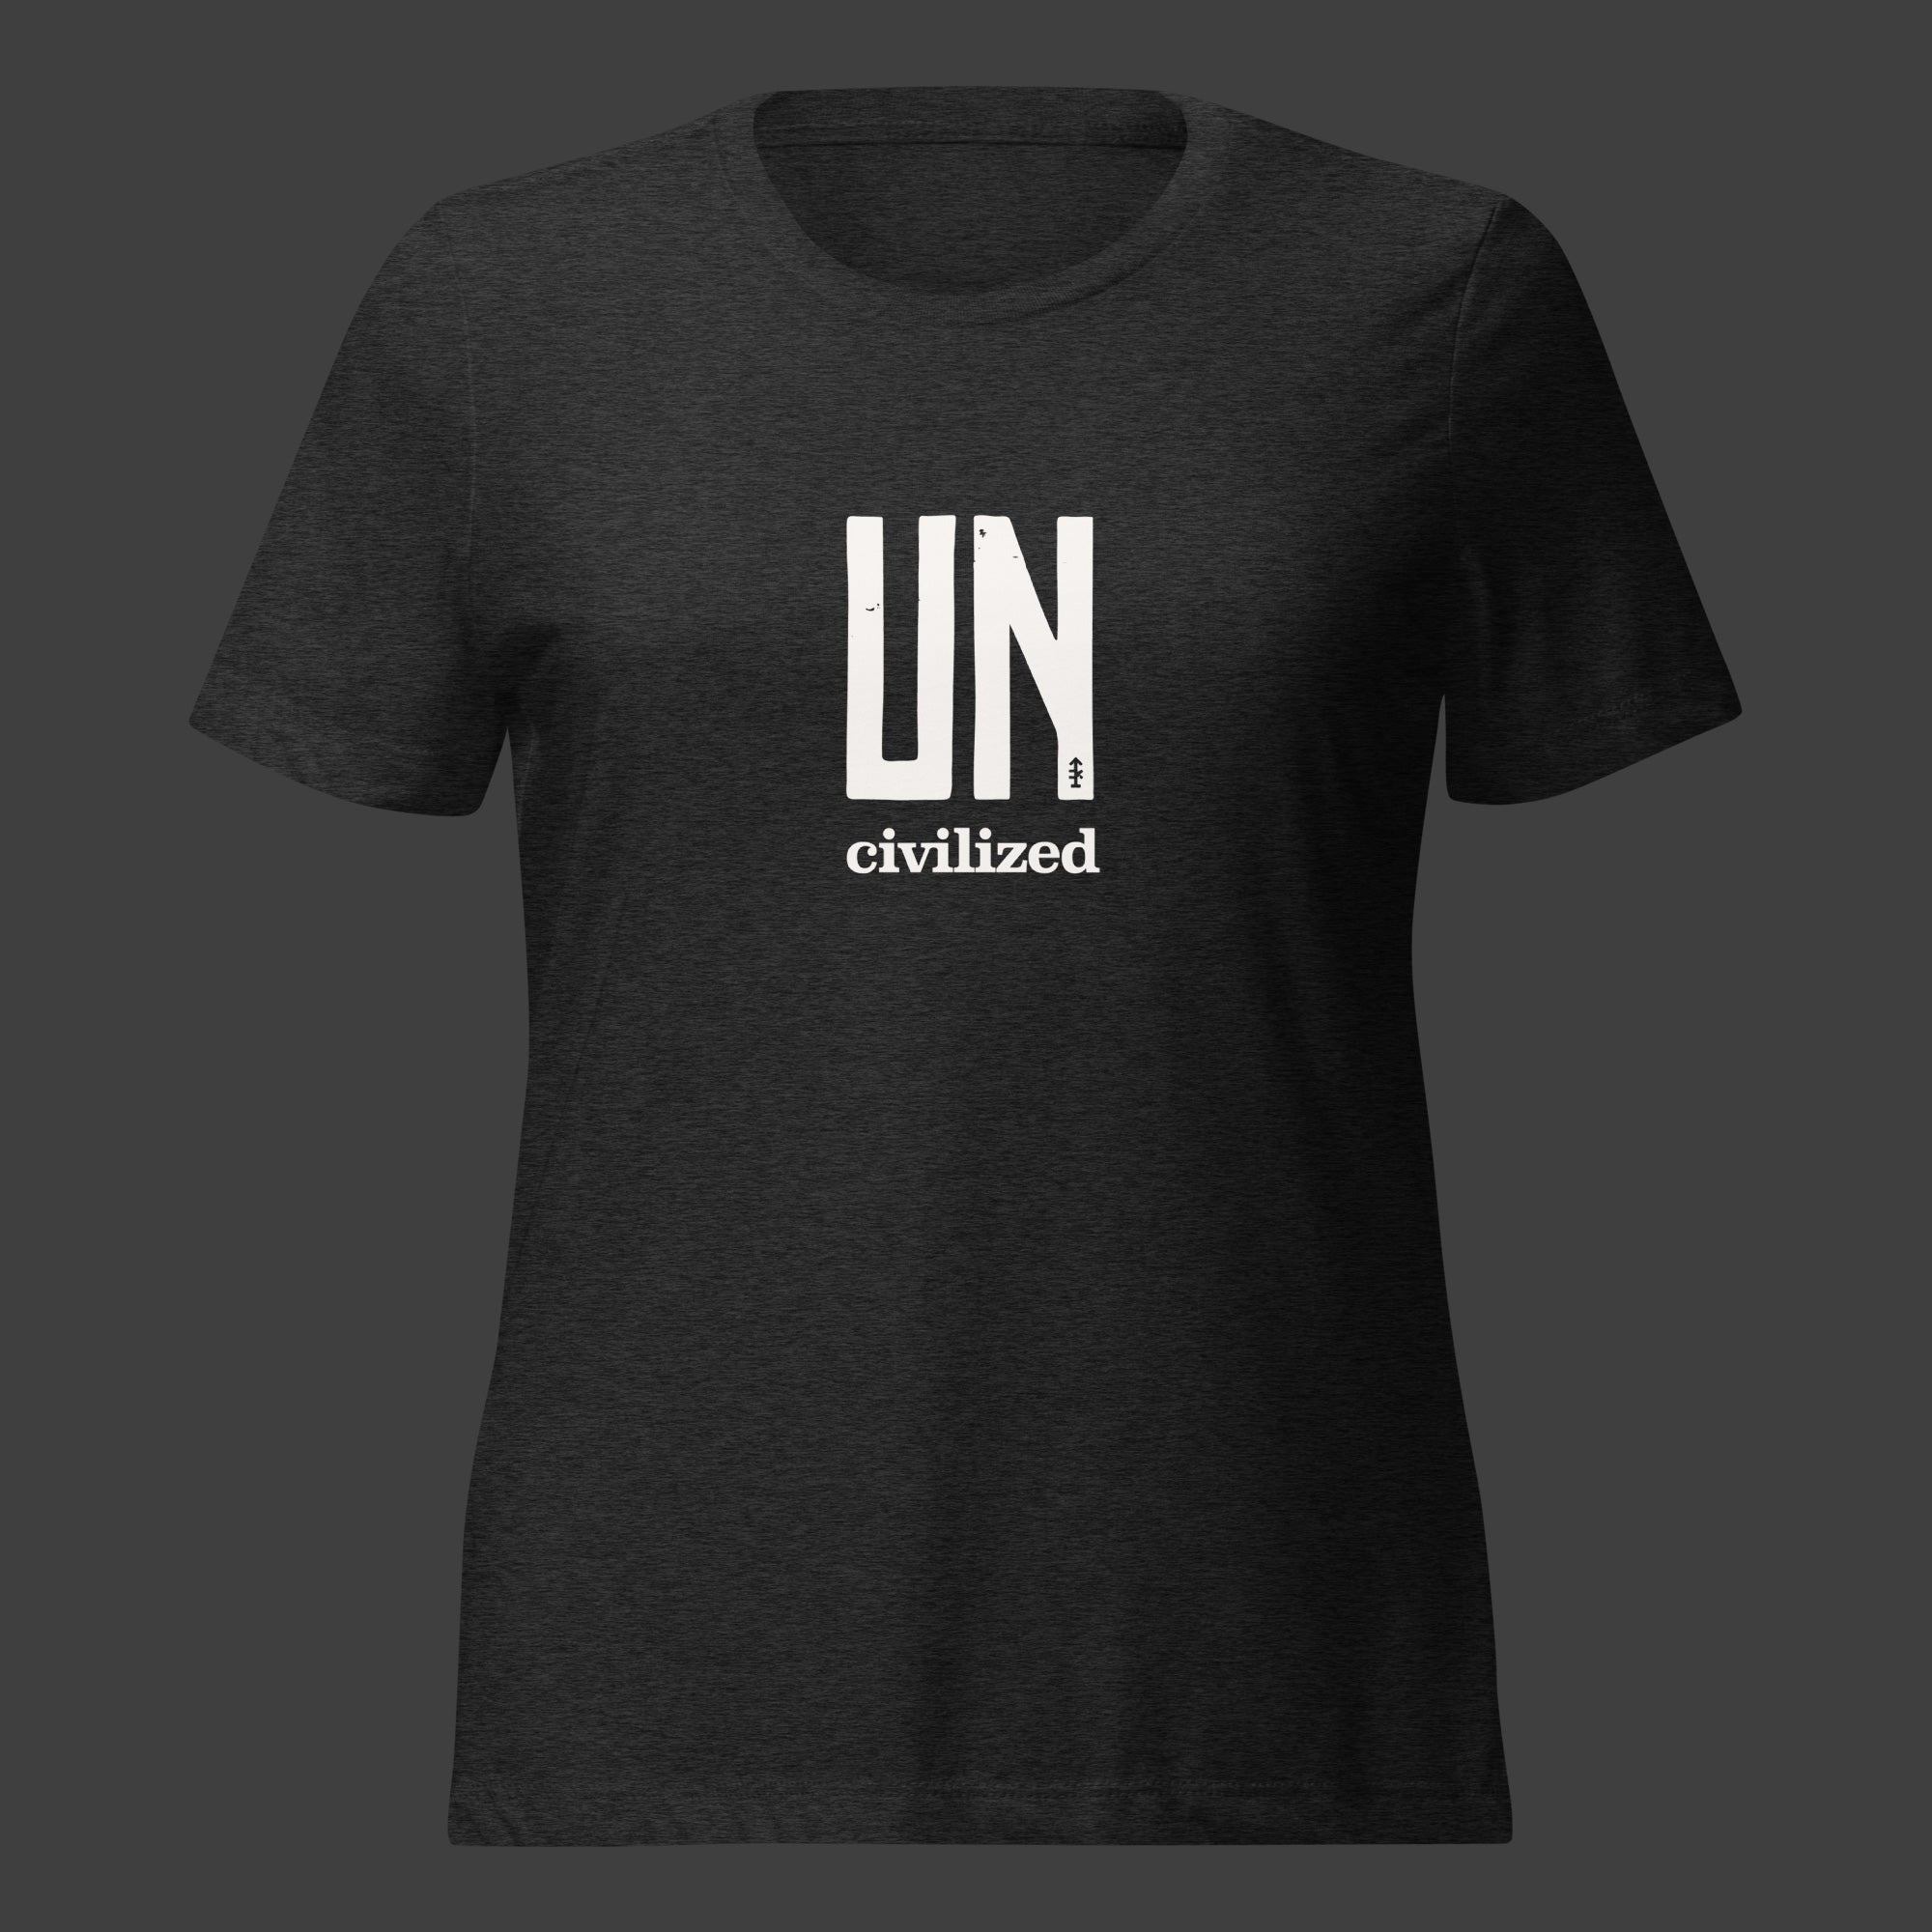 Women's UNcivilized T-Shirt (Black)